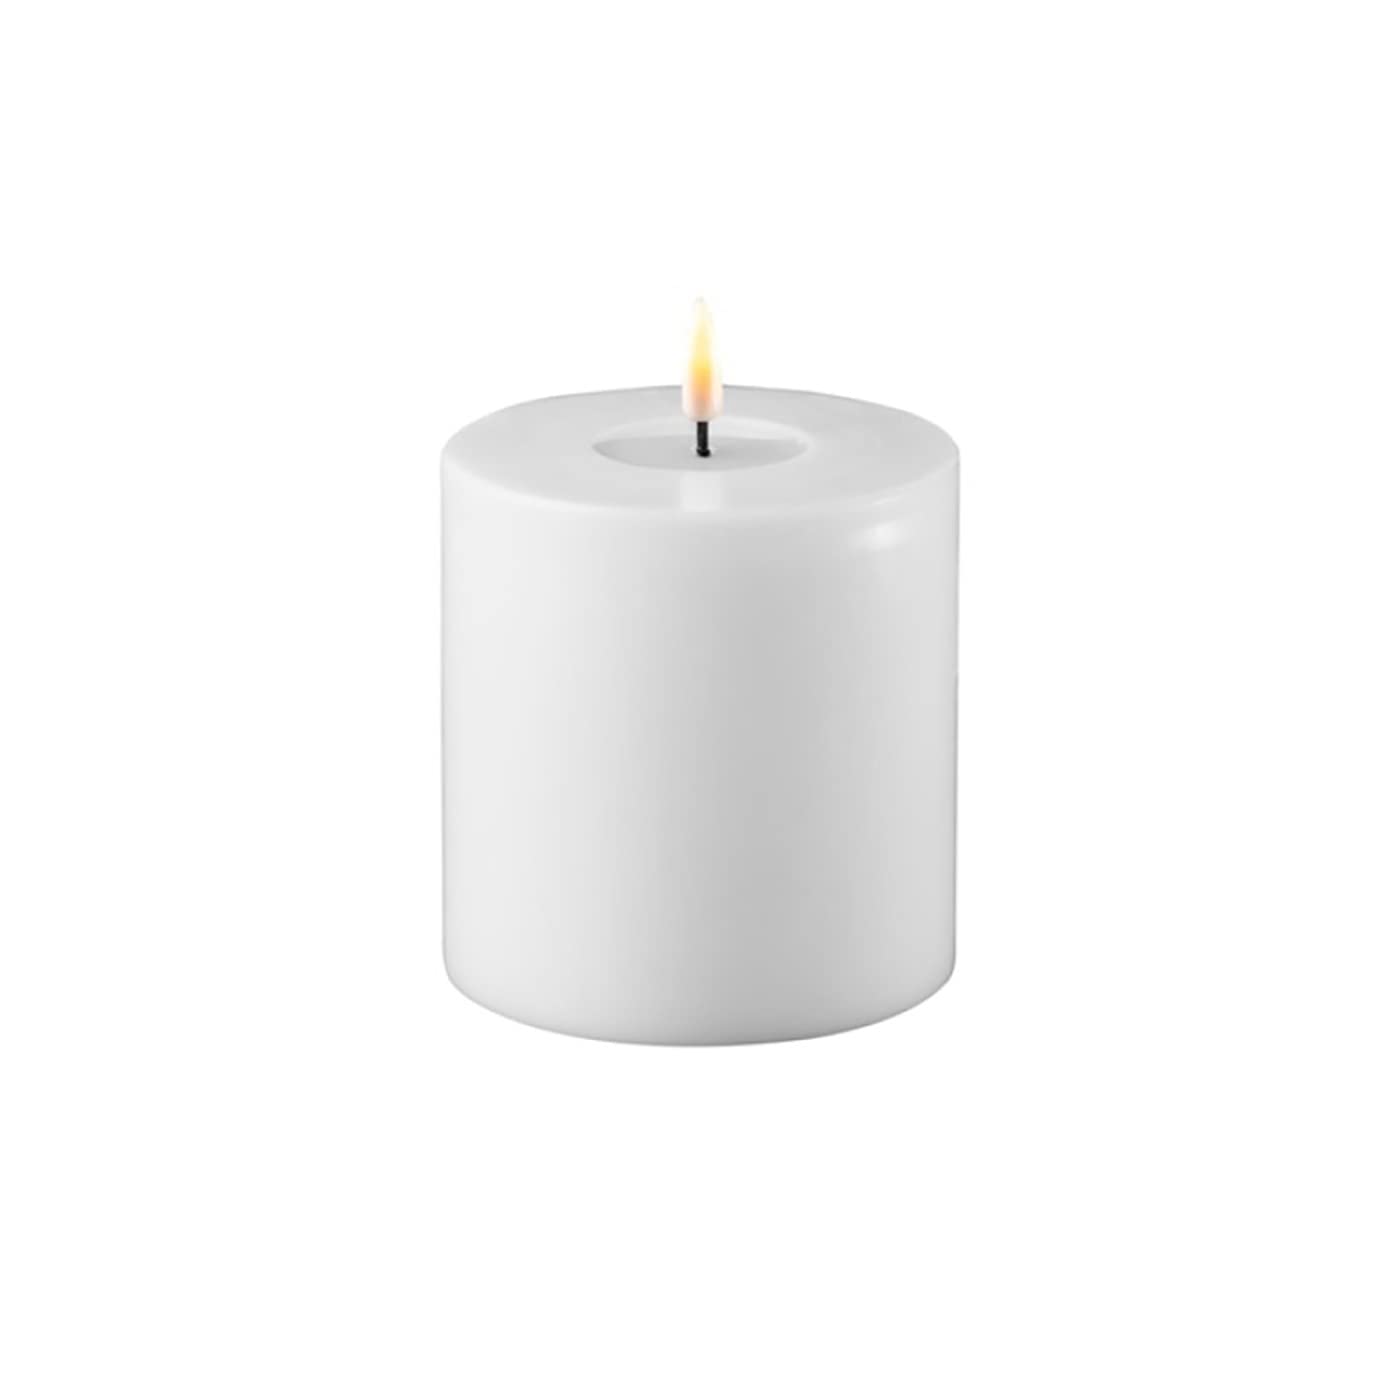 ReWu LED Kerze Deluxe Homeart, Indoor LED-Kerze mit realistischer Flamme auf einem Echtwachsspiegel, warmweißes Licht -Weiß 10 x 10 cm